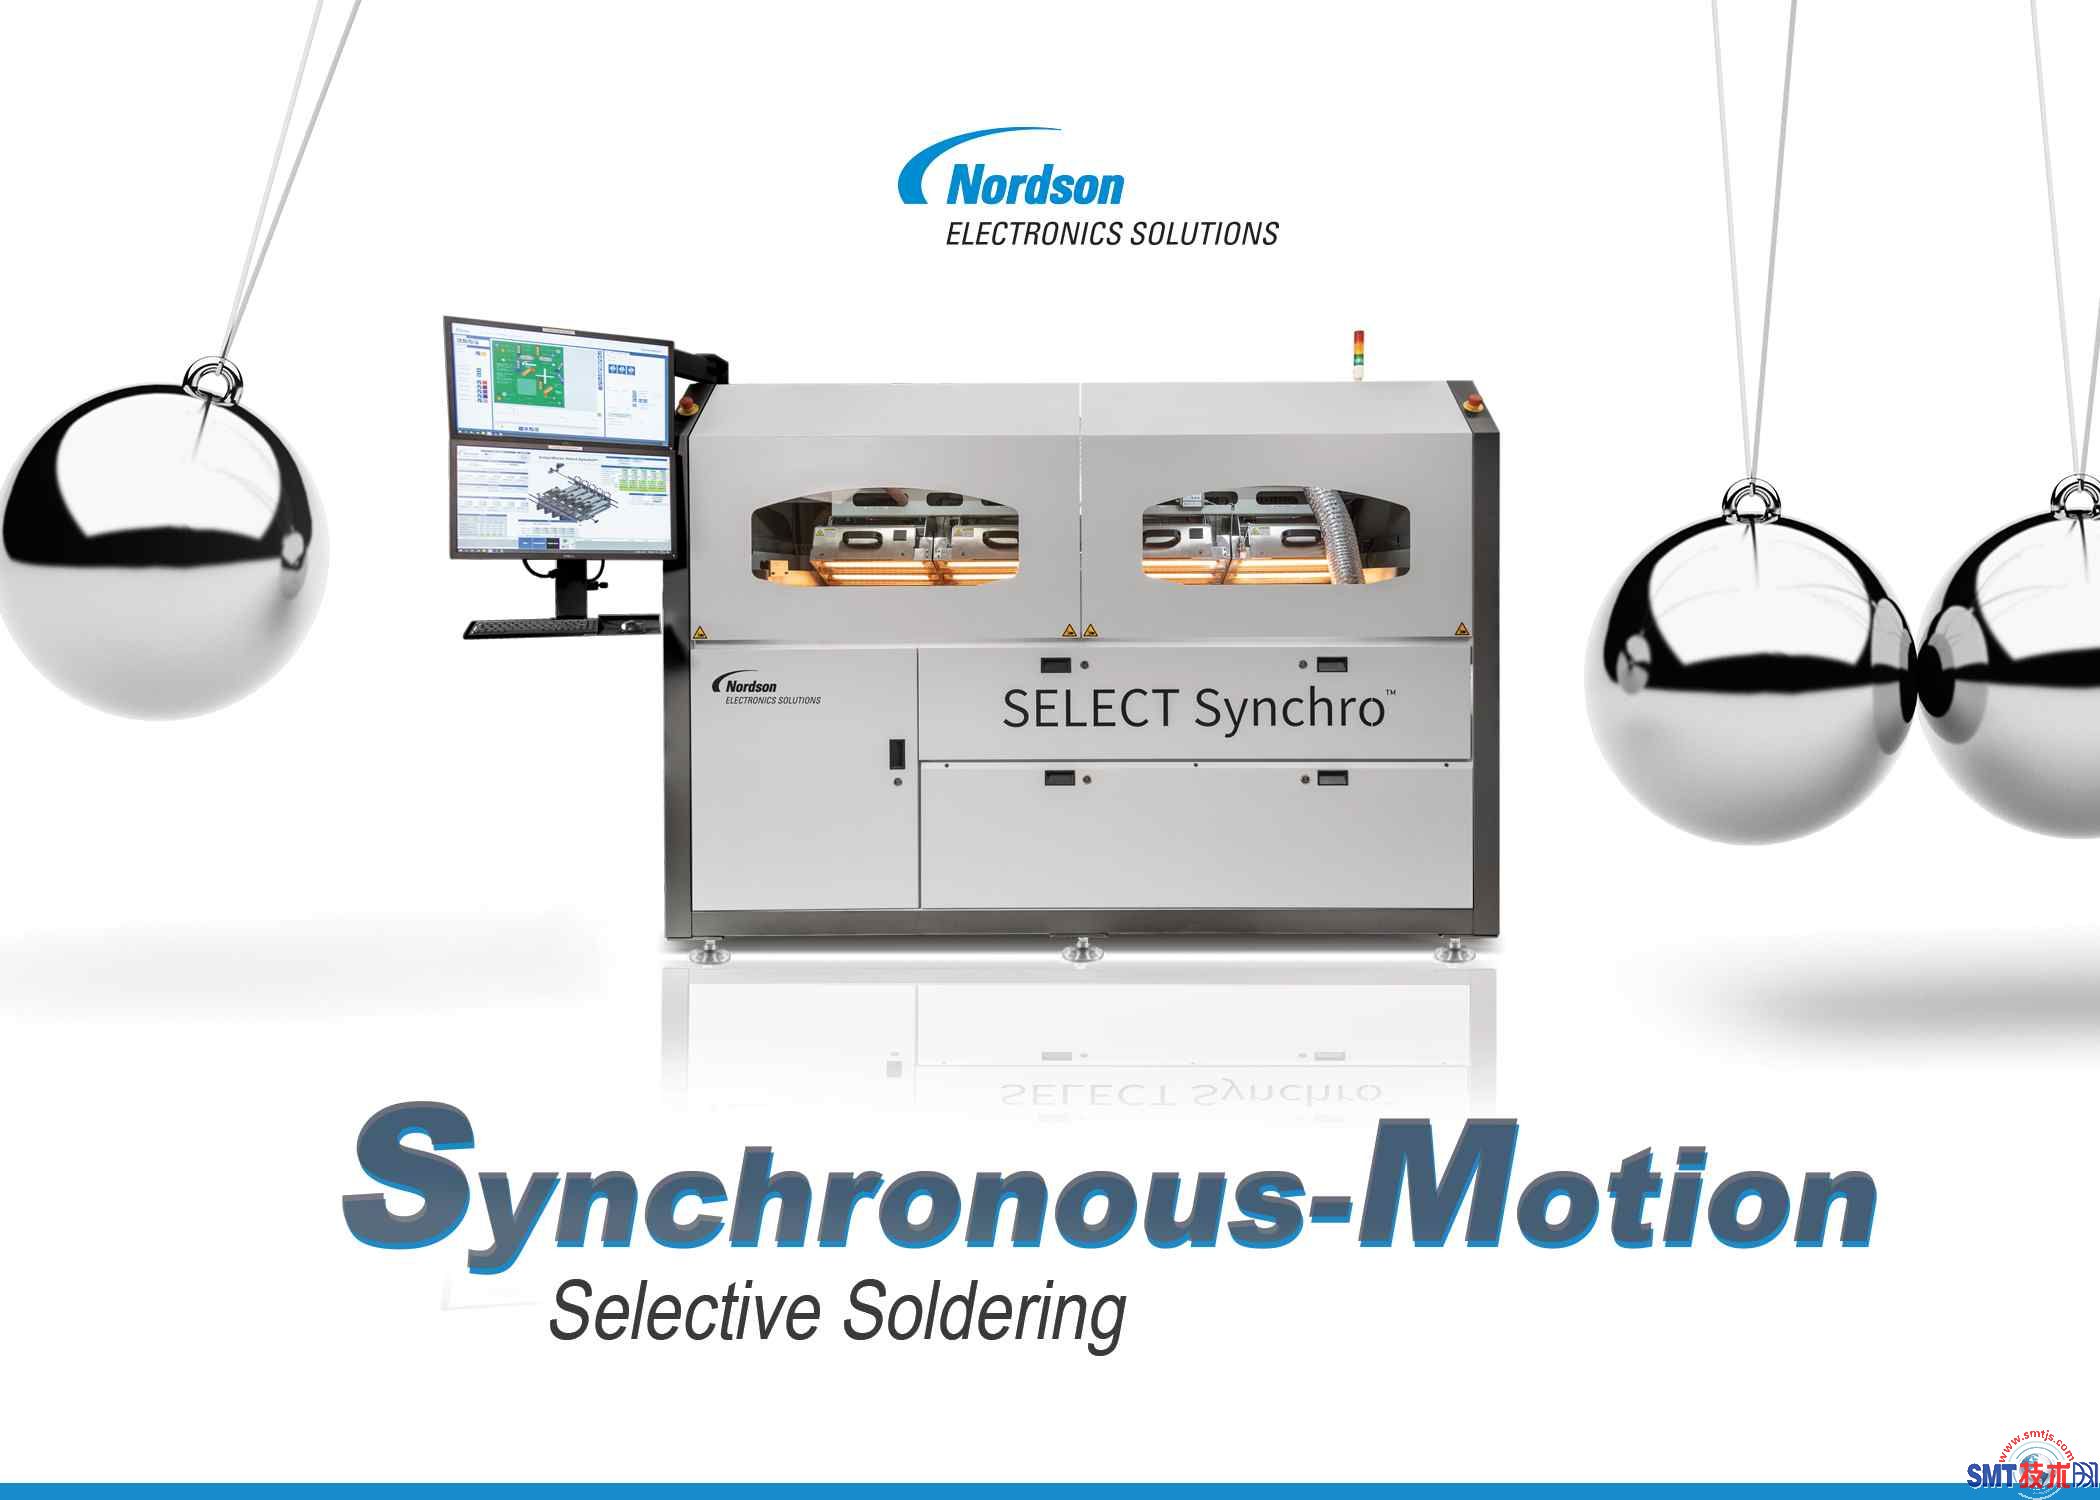 诺信电子解决方案 推出新款 SELECT Synchro 选择性焊接系统